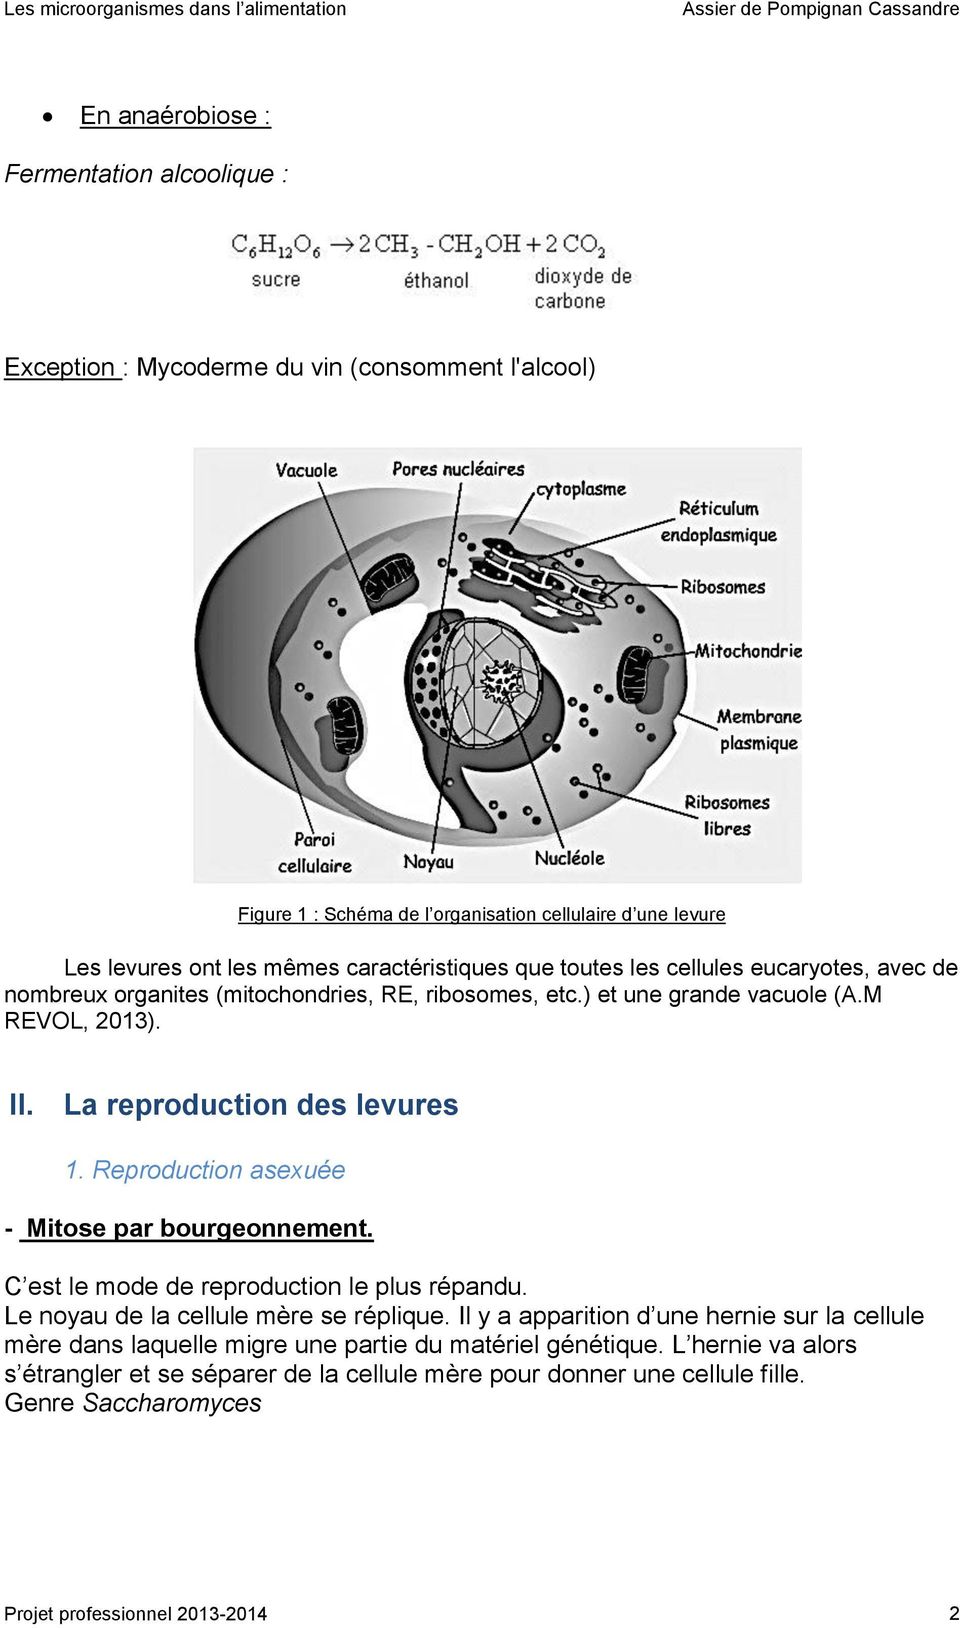 La reproduction des levures 1. Reproduction asexuée - Mitose par bourgeonnement. C est le mode de reproduction le plus répandu. Le noyau de la cellule mère se réplique.